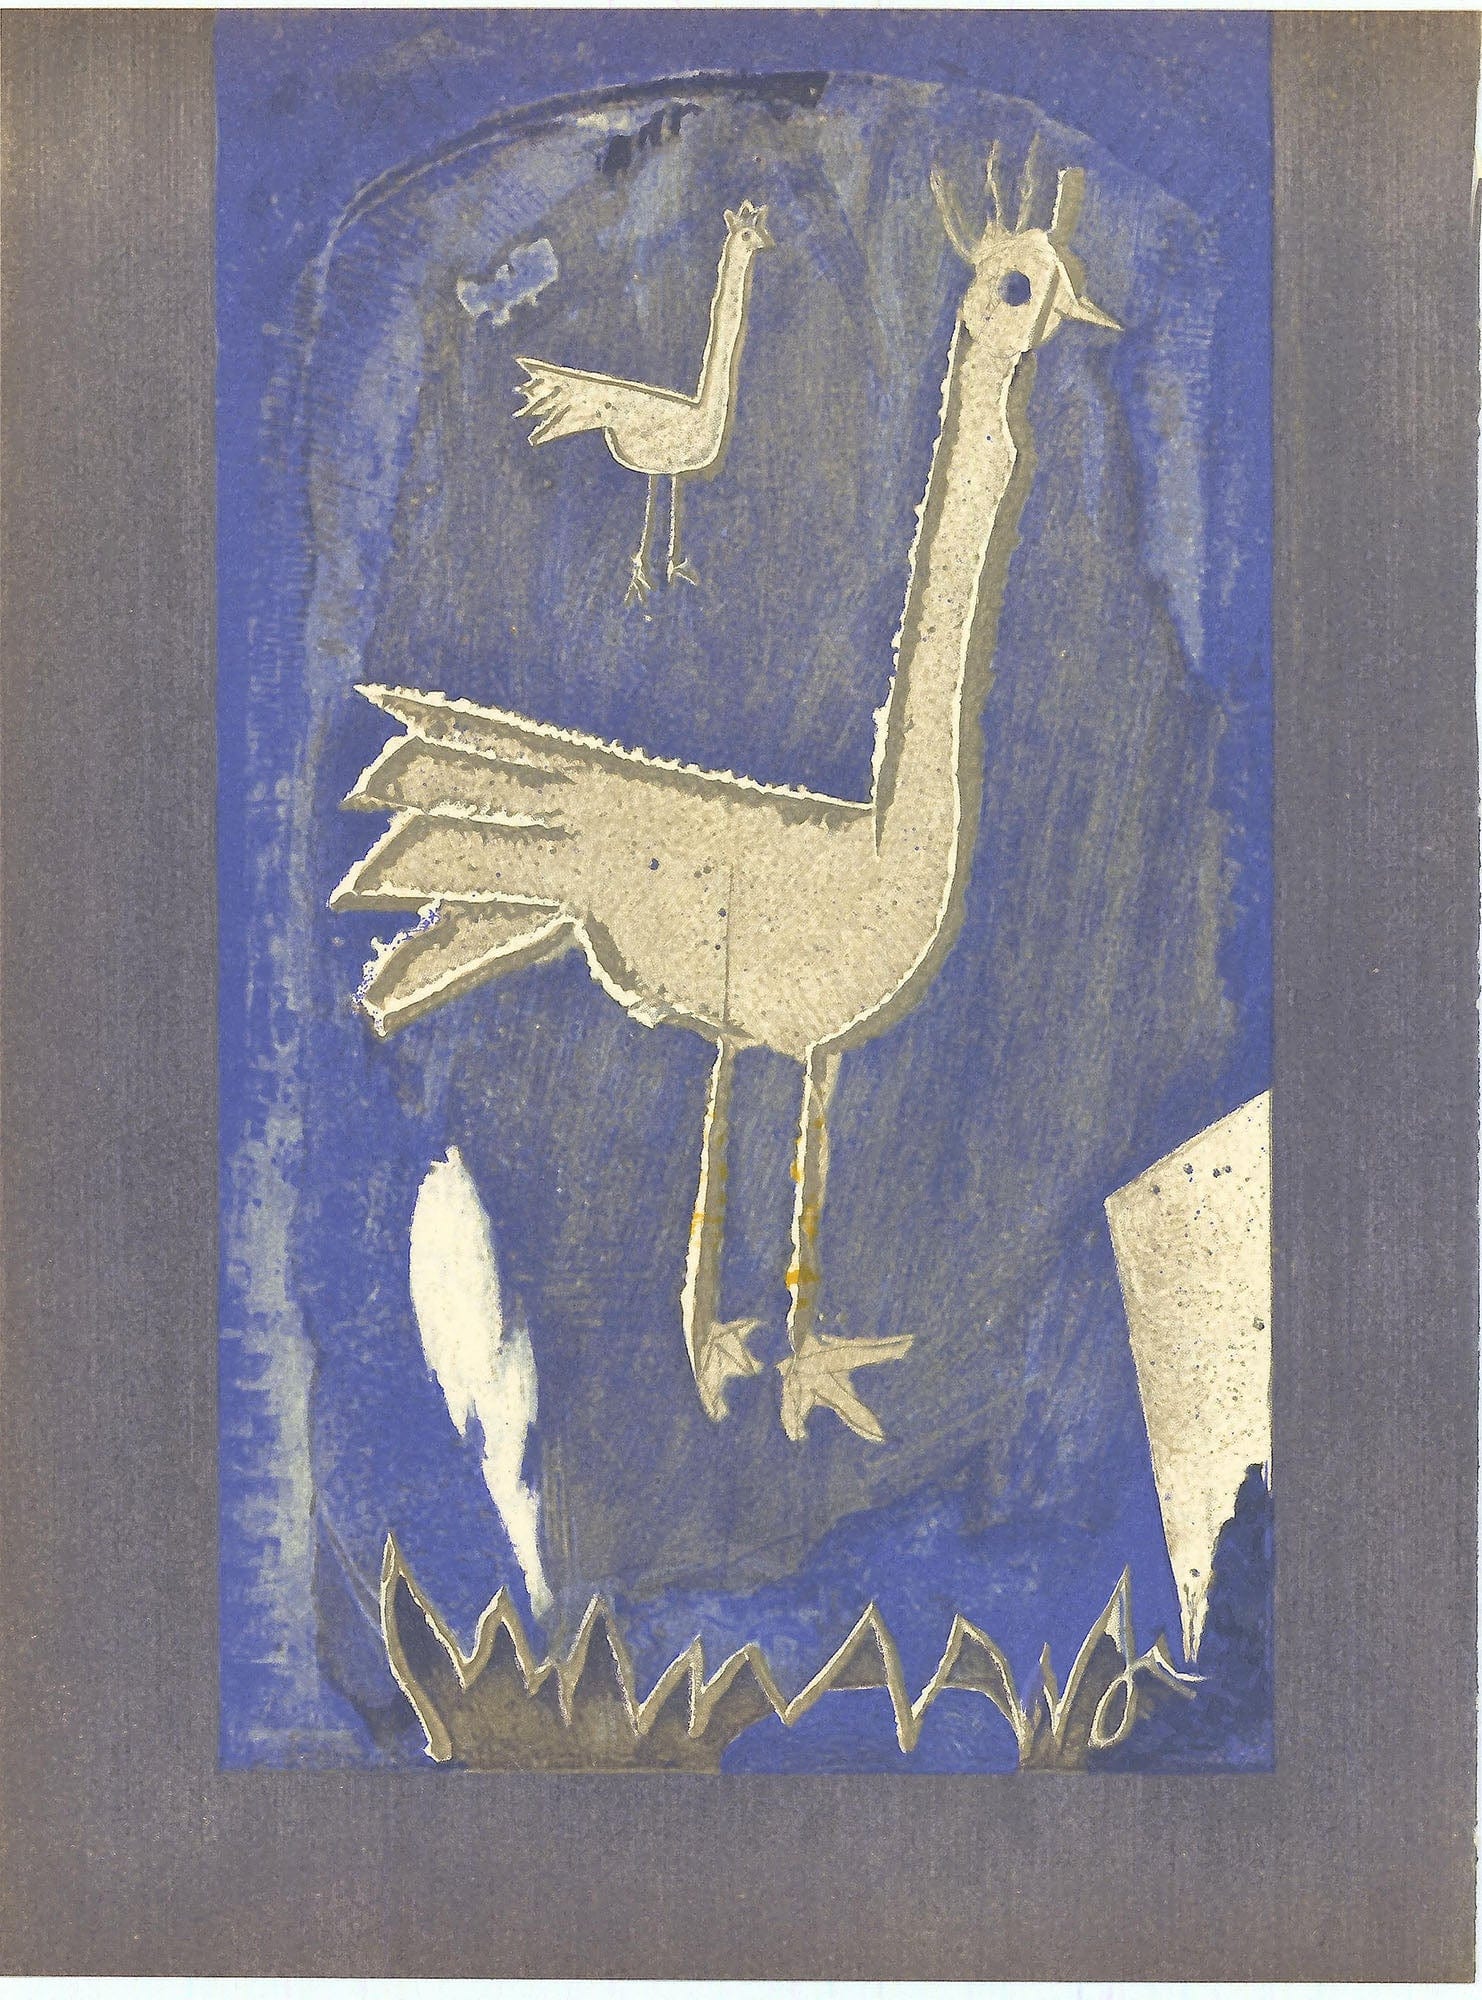 Georges Braque, "Frontspiece" ZOOM Vol. 8 No. 31 ET 32 lithograph verve